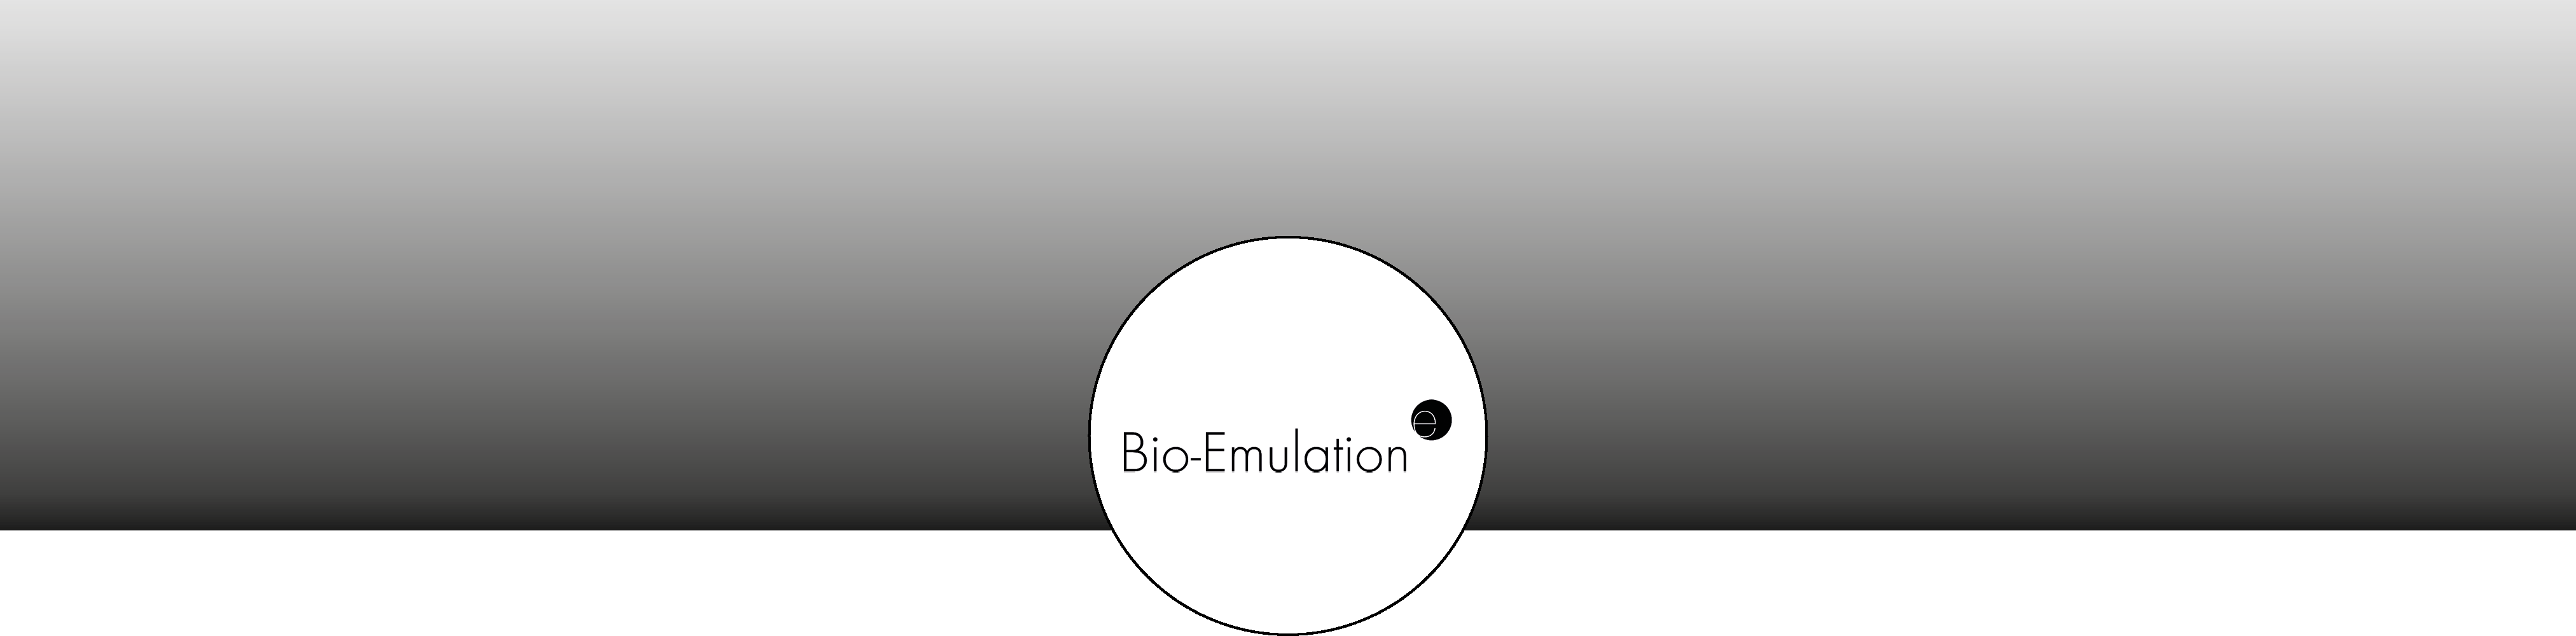 banner_bio-emulation